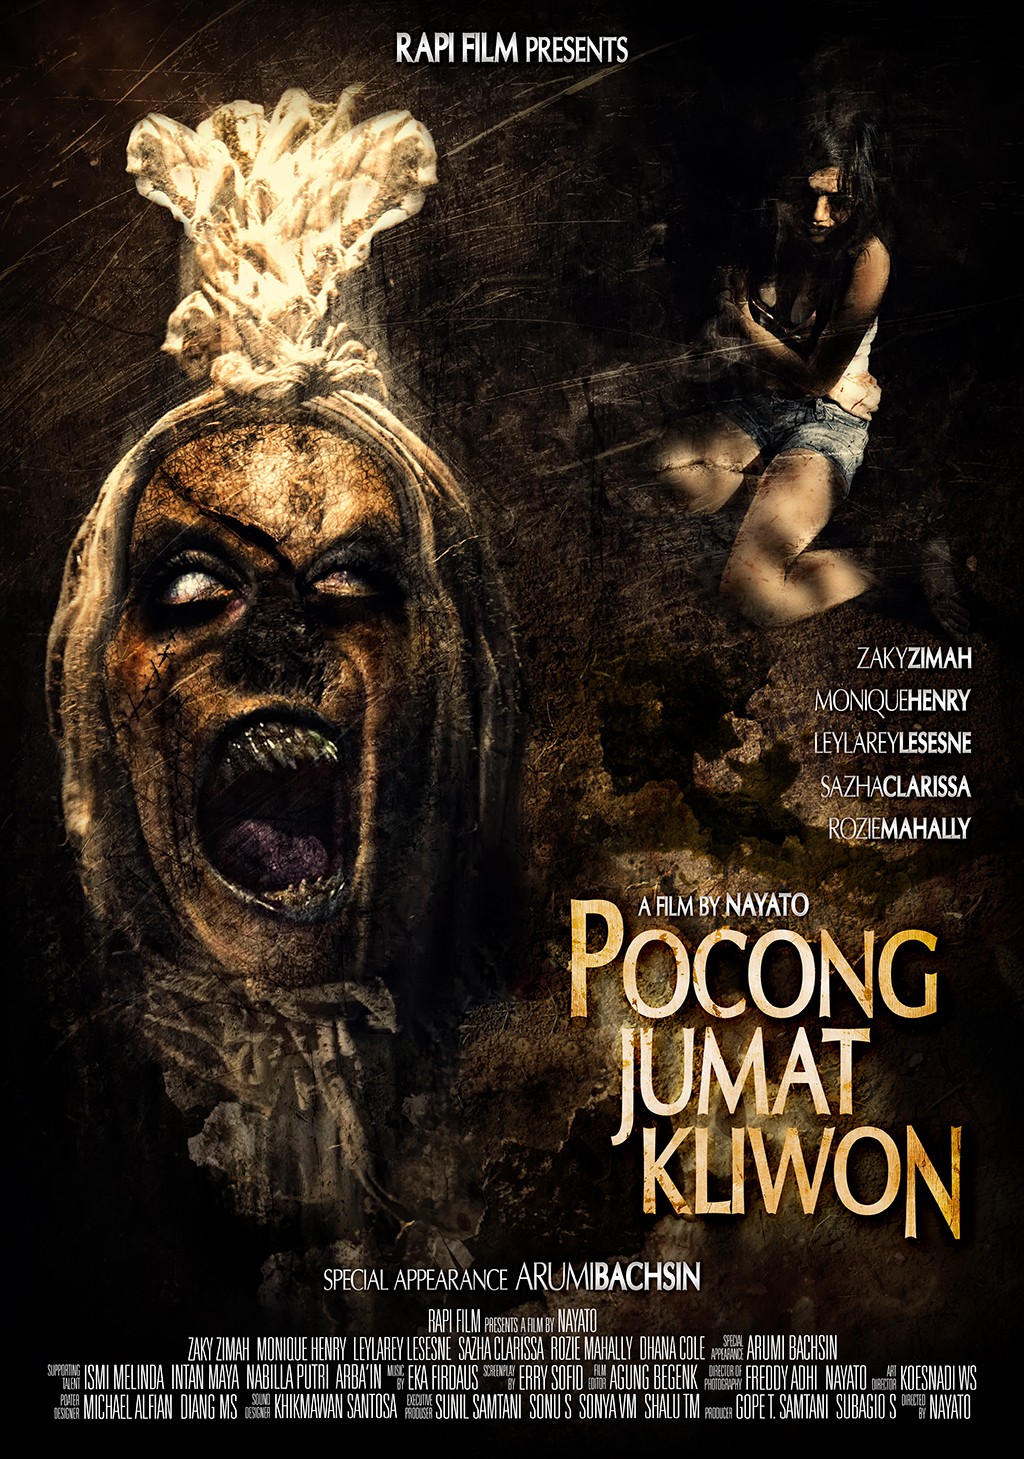 Extra Large Movie Poster Image for Pocong jumat kliwon 